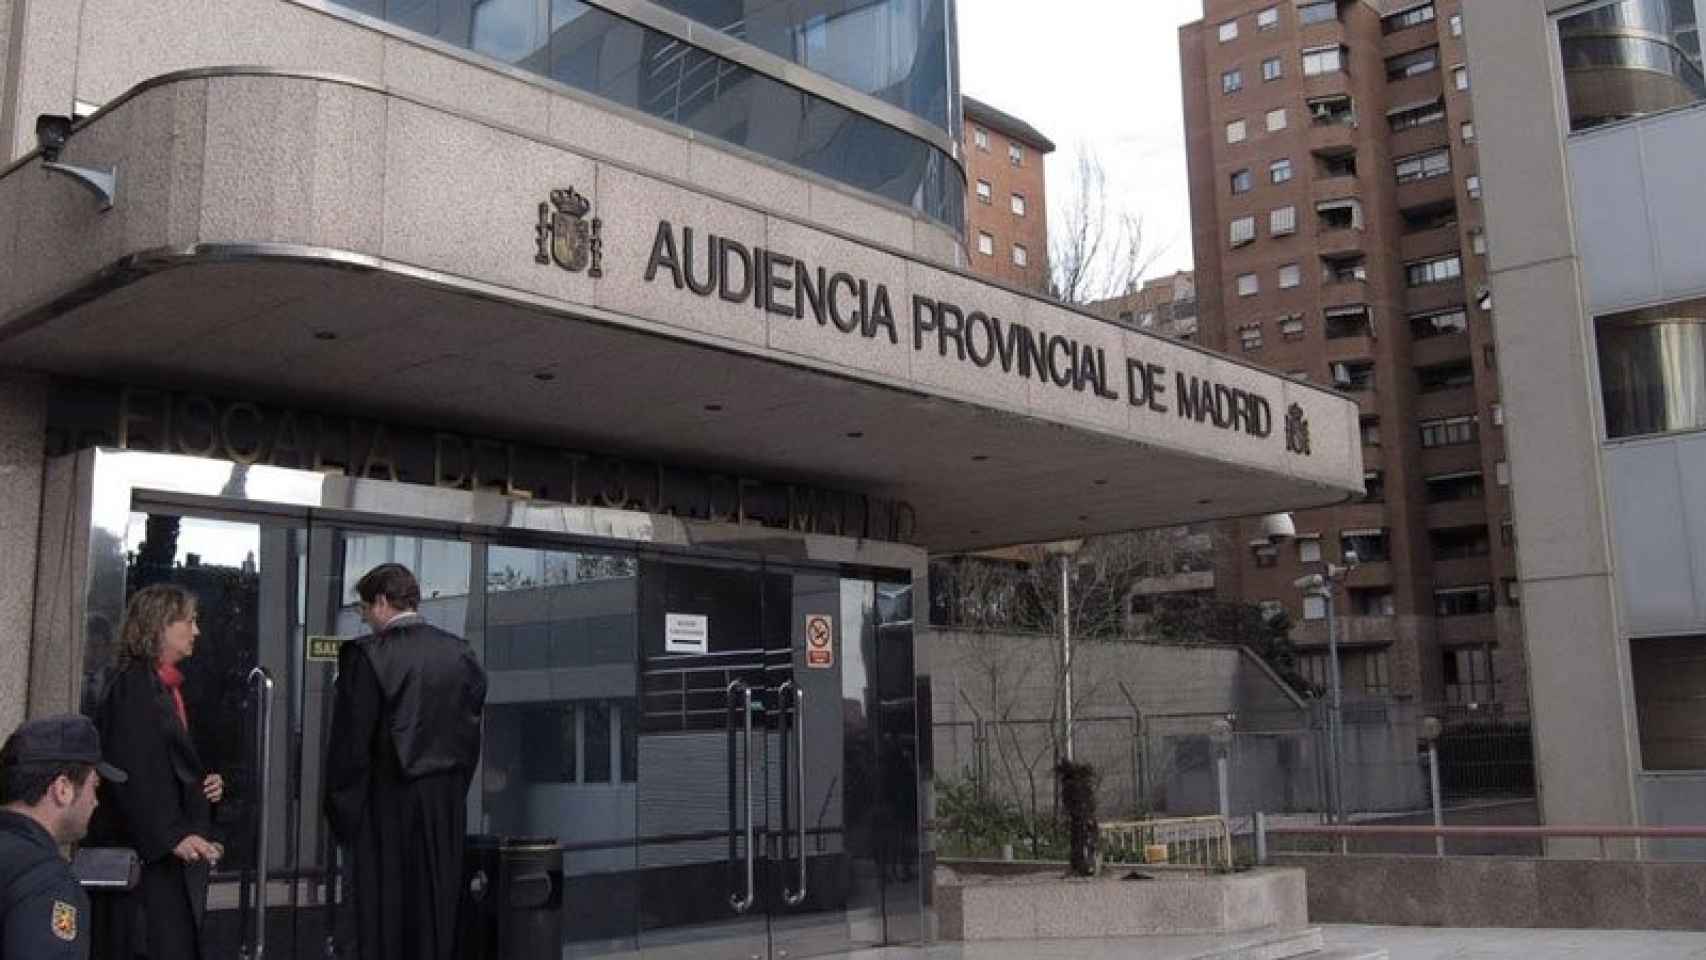 Entrada a la Audiencia Provincial de Madrid